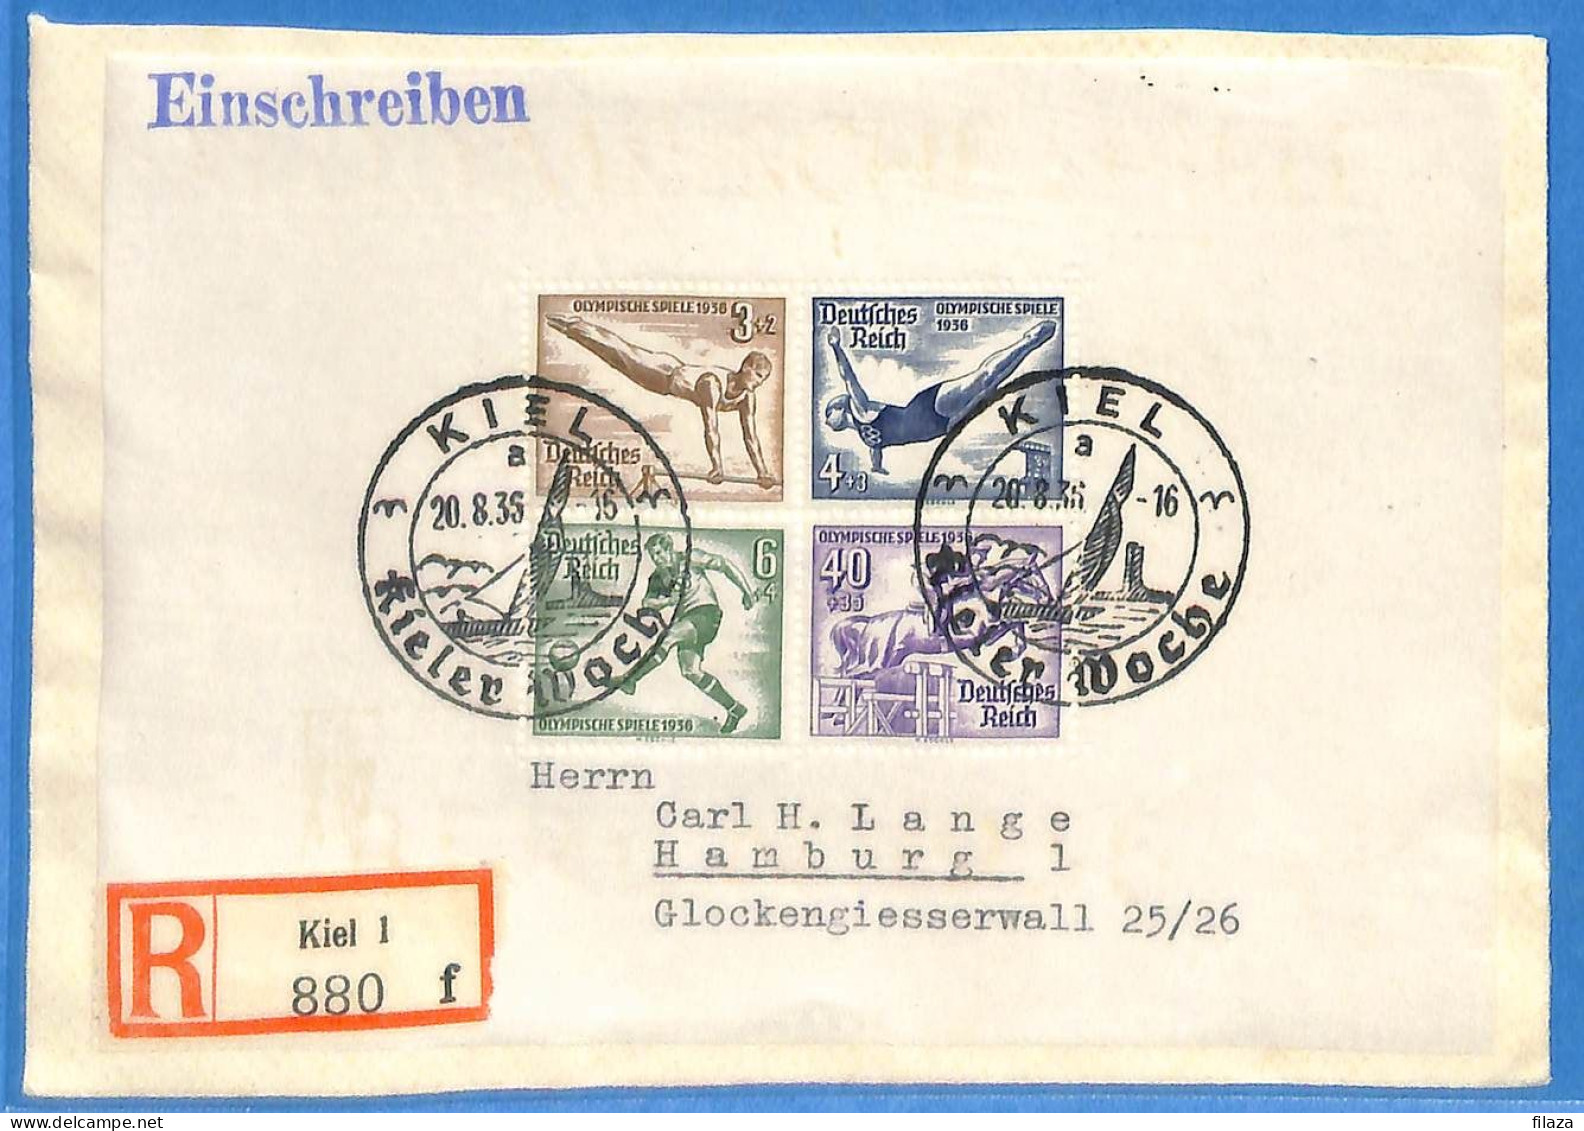 Allemagne Reich 1936 - Lettre Einschreiben De Kiel - G33159 - Covers & Documents